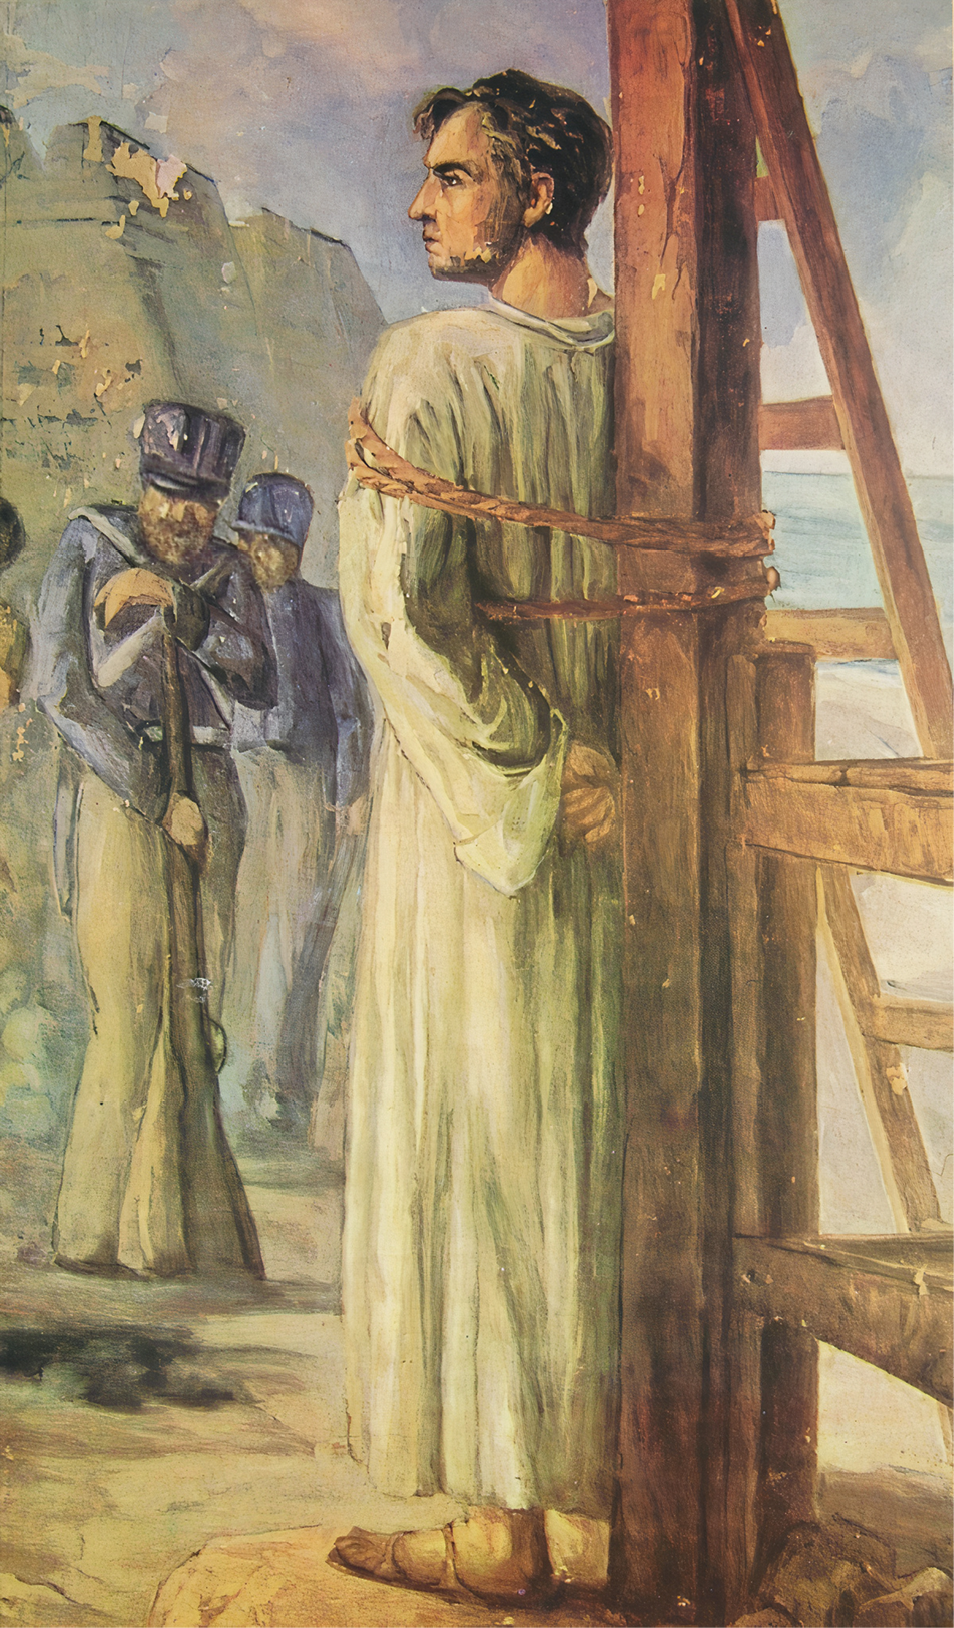 Pintura. À direita, homens com farda azul, chapéu e armas. Ao lado, homem, usando uma túnica branca e sandálias, está de costas e amarrado em um tronco.